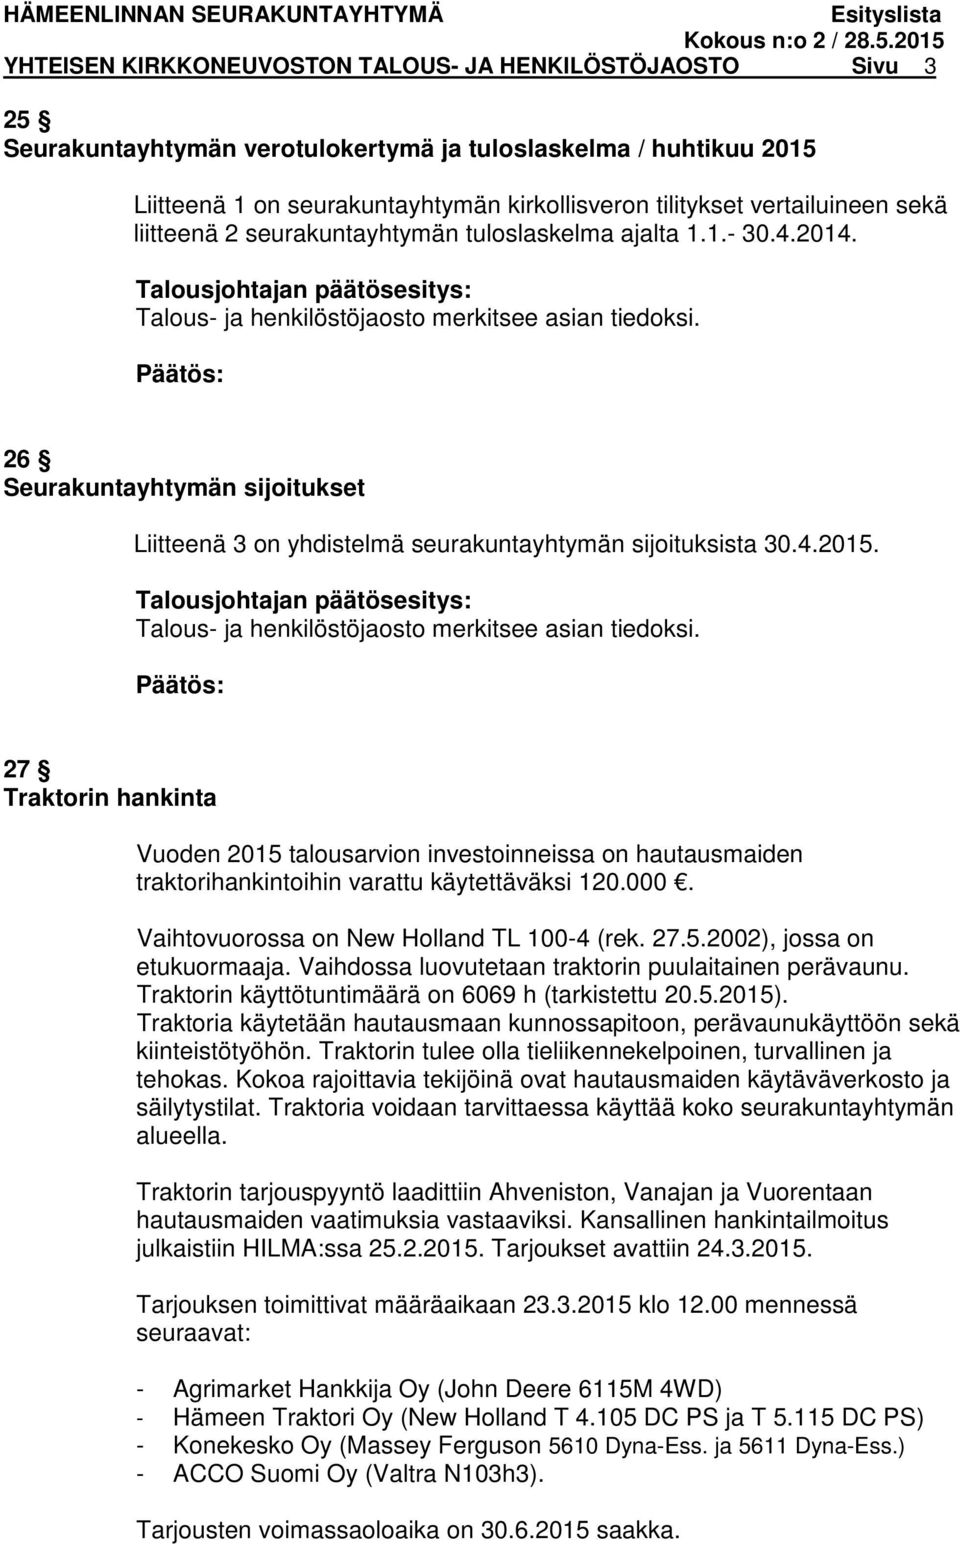 26 Seurakuntayhtymän sijoitukset Liitteenä 3 on yhdistelmä seurakuntayhtymän sijoituksista 30.4.2015. Talous- ja henkilöstöjaosto merkitsee asian tiedoksi.